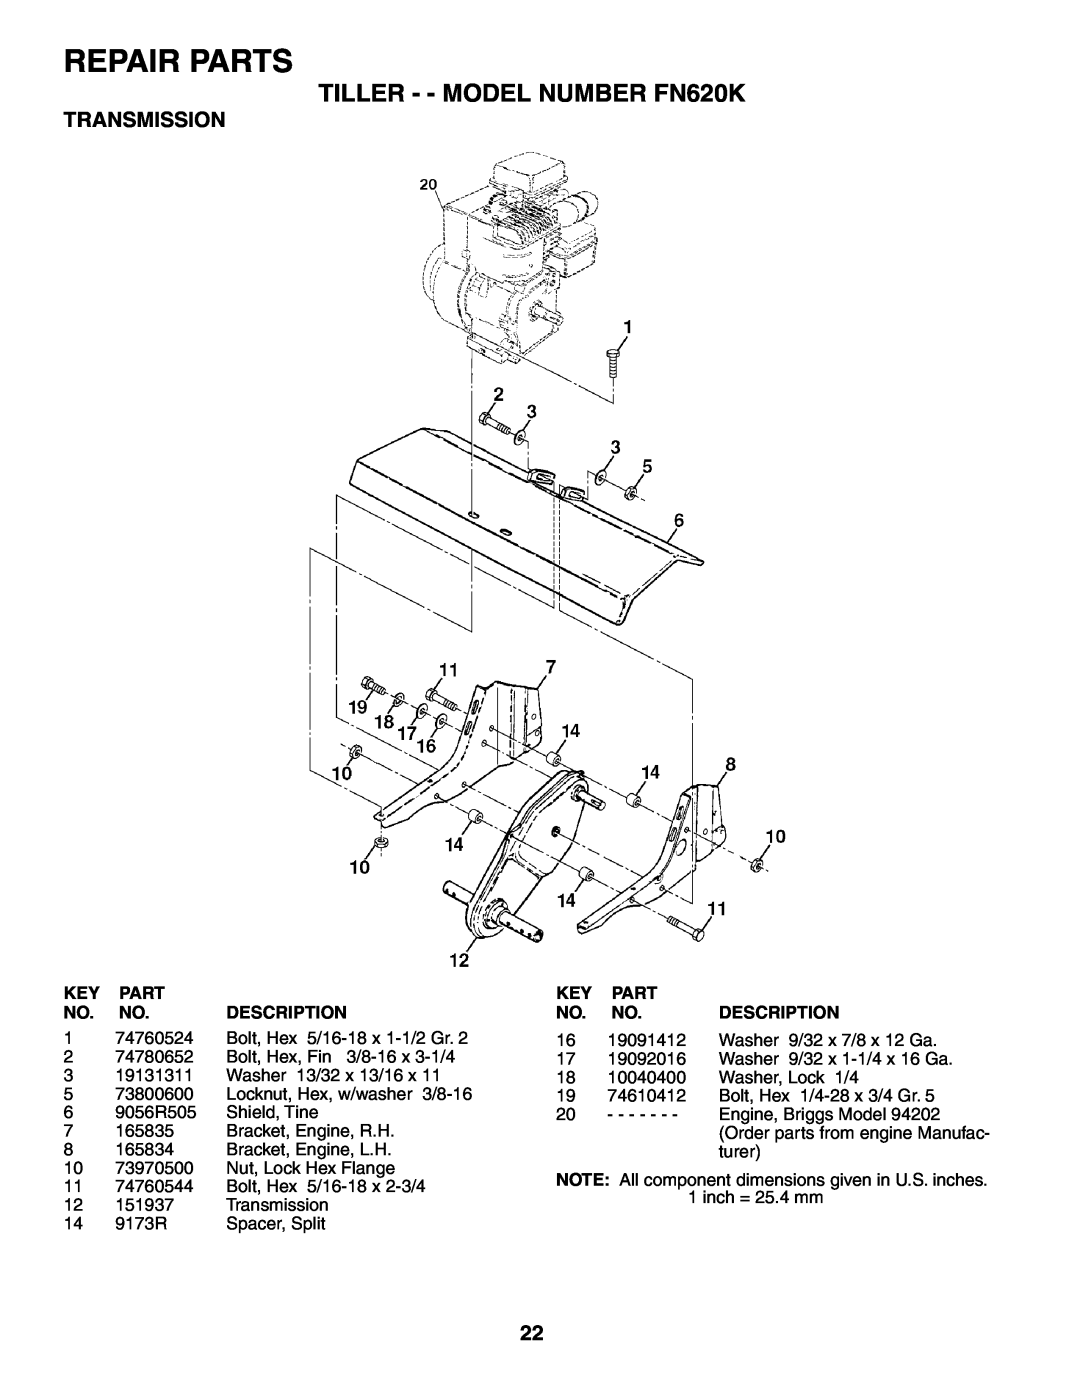 Electrolux owner manual Transmission, Repair Parts, TILLER - - MODEL NUMBER FN620K 